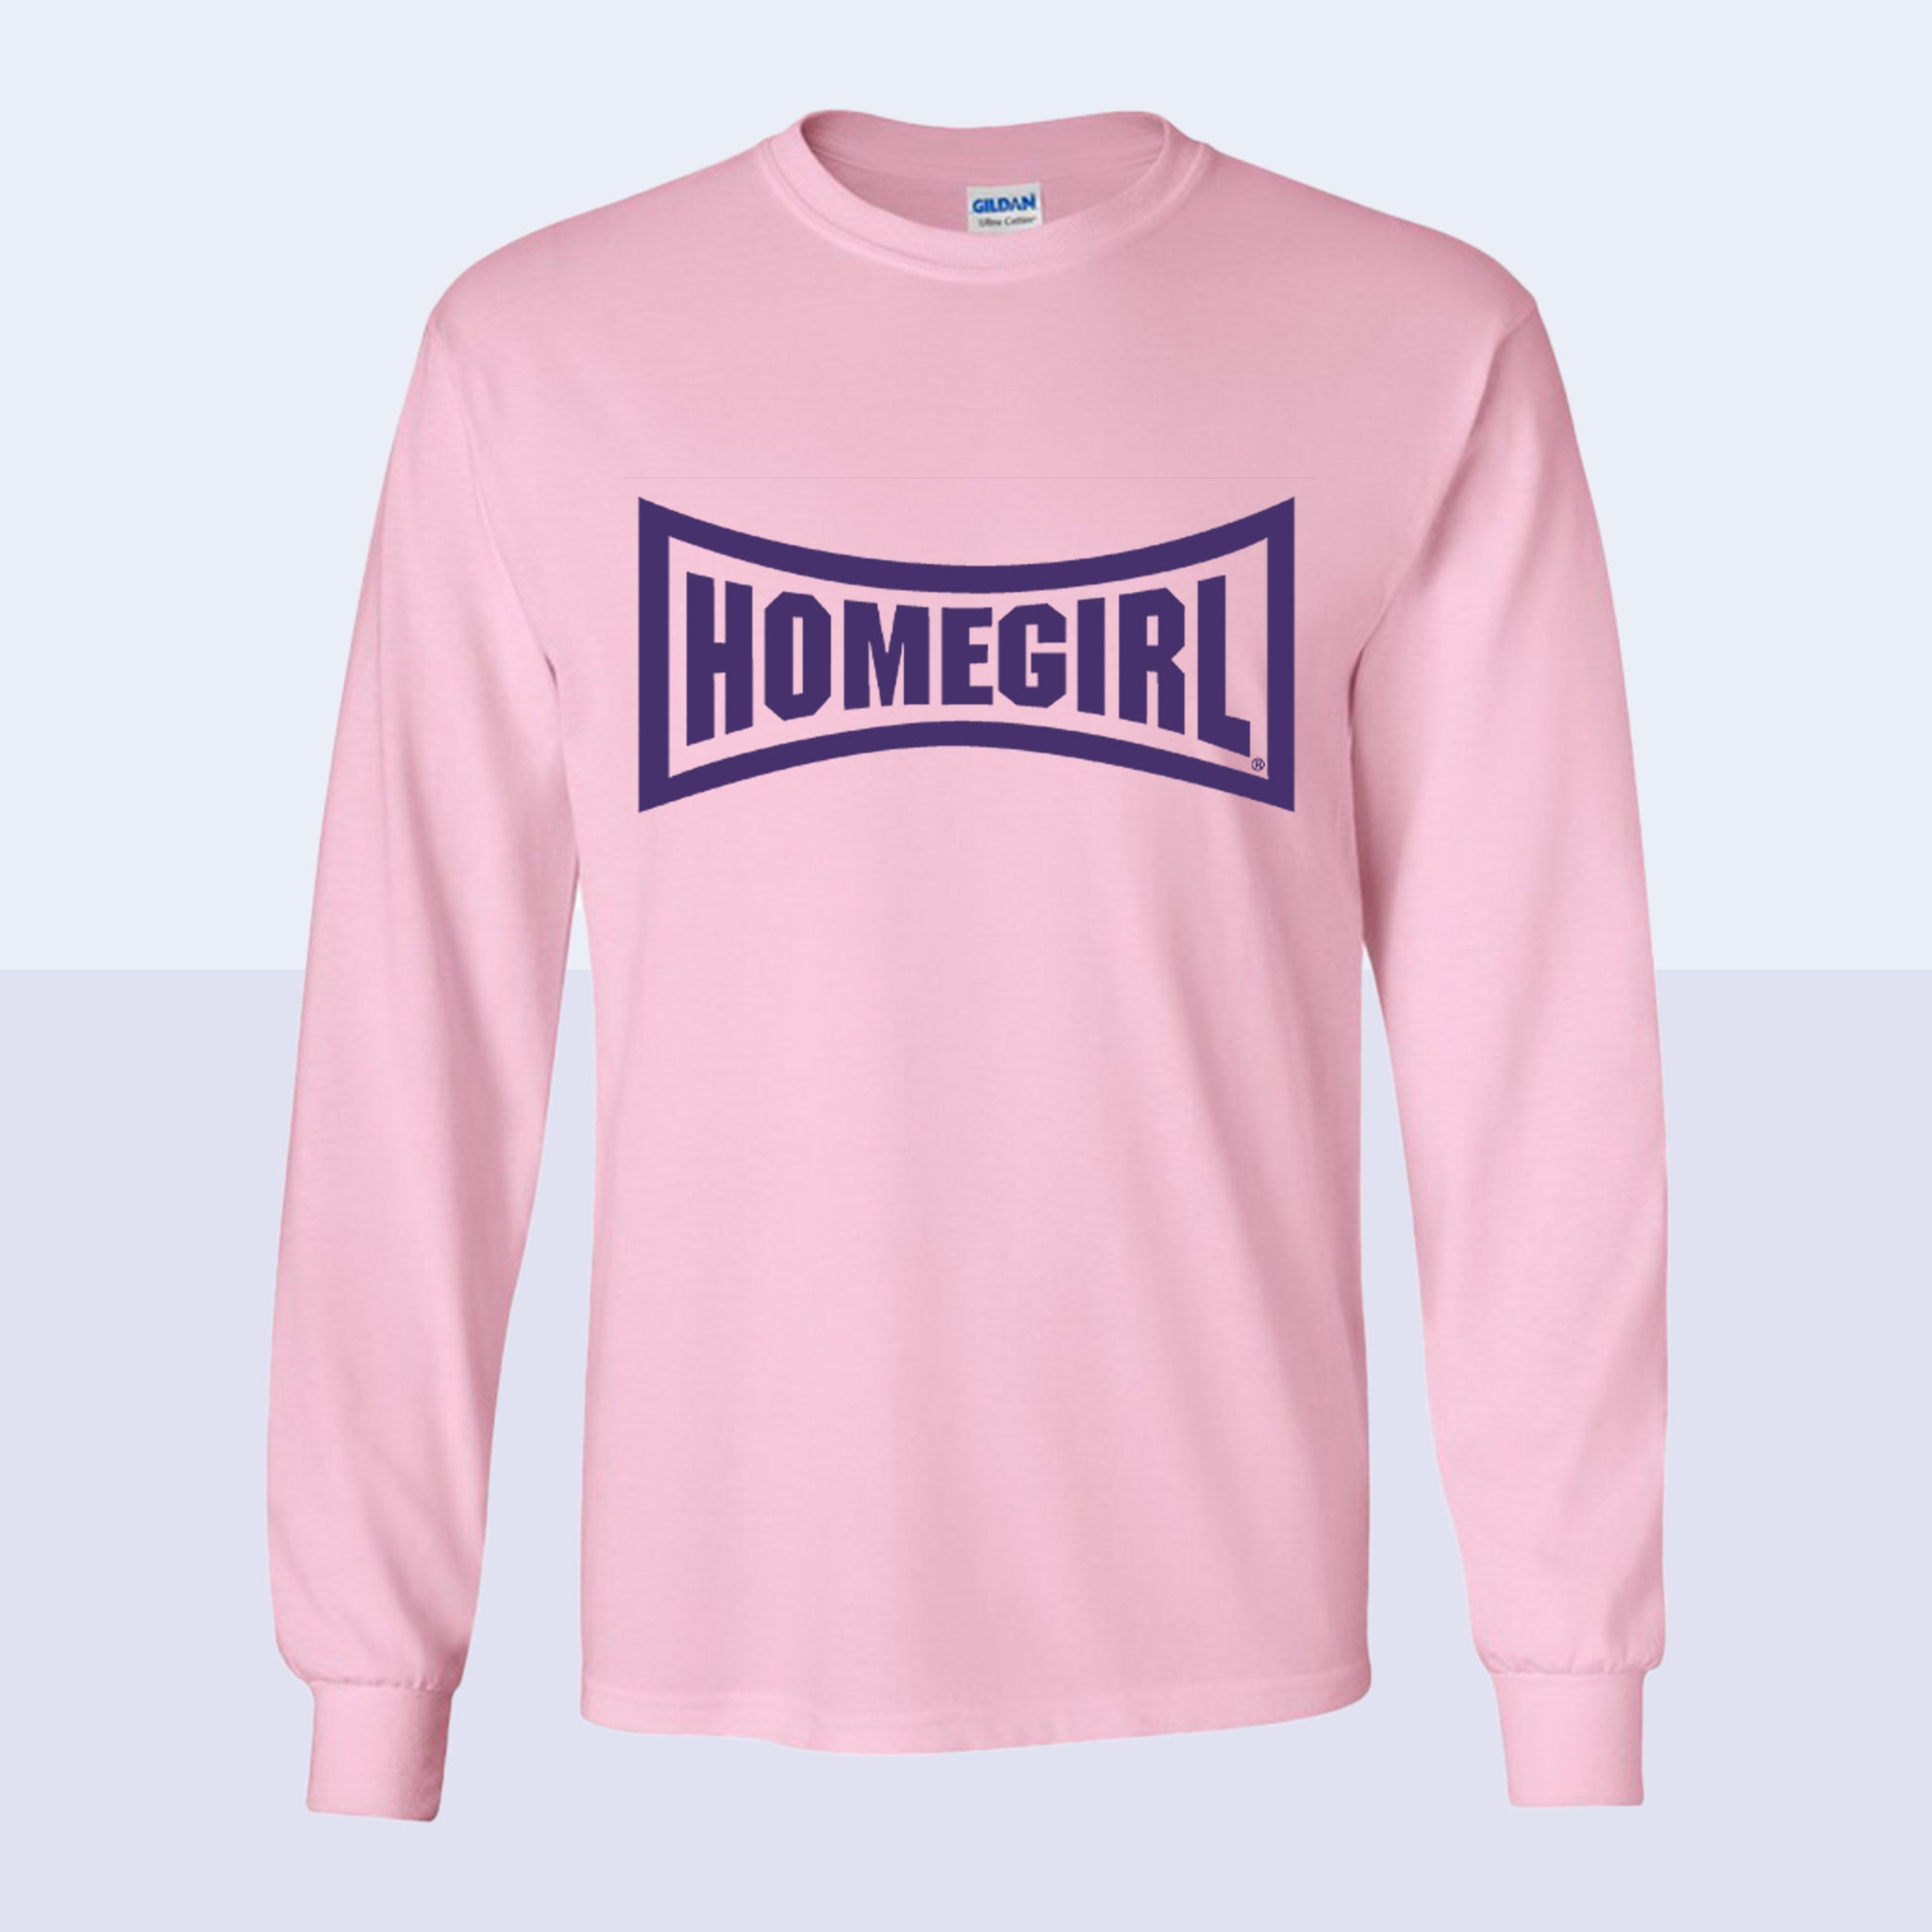 Homegirl Long Sleeve T-Shirt